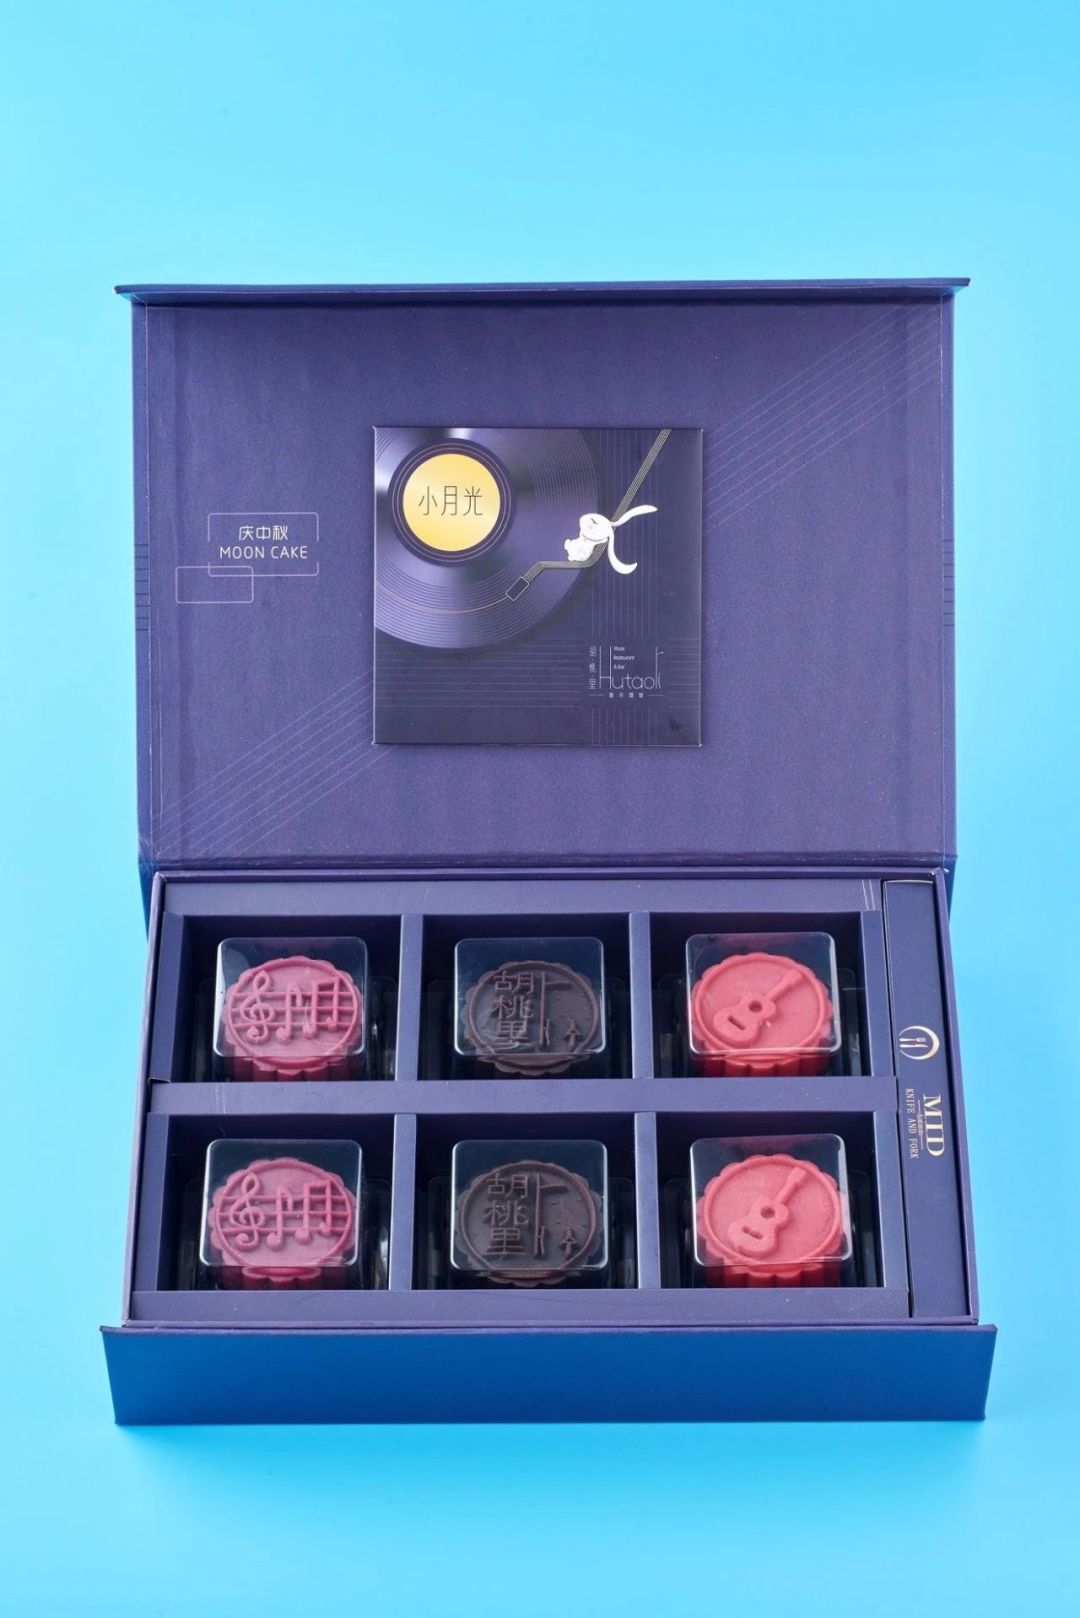 法式月饼包装主题图片